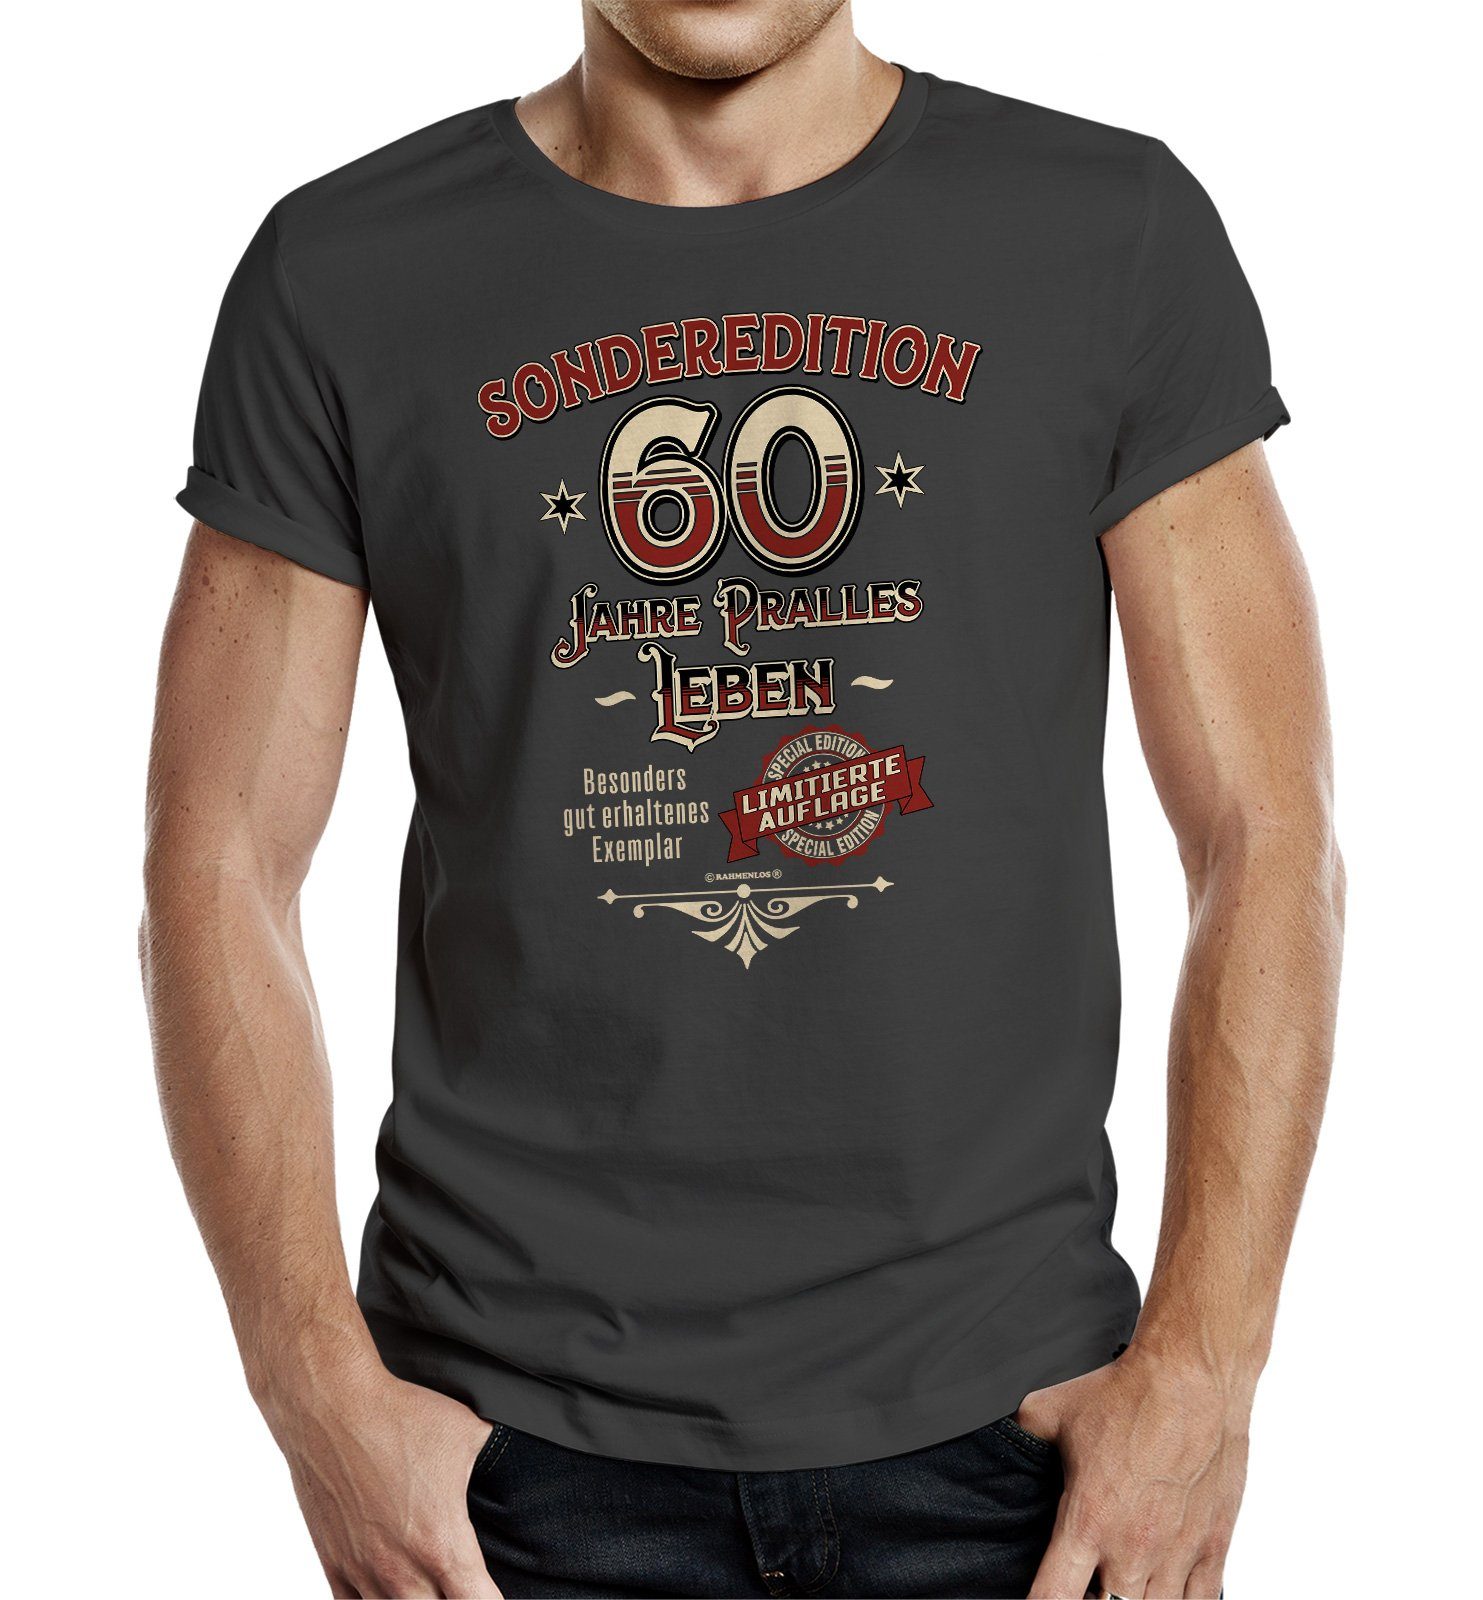 RAHMENLOS® T-Shirt Geschenk zum 60. Geburtstag - Sonderedition 60 pralles Leben